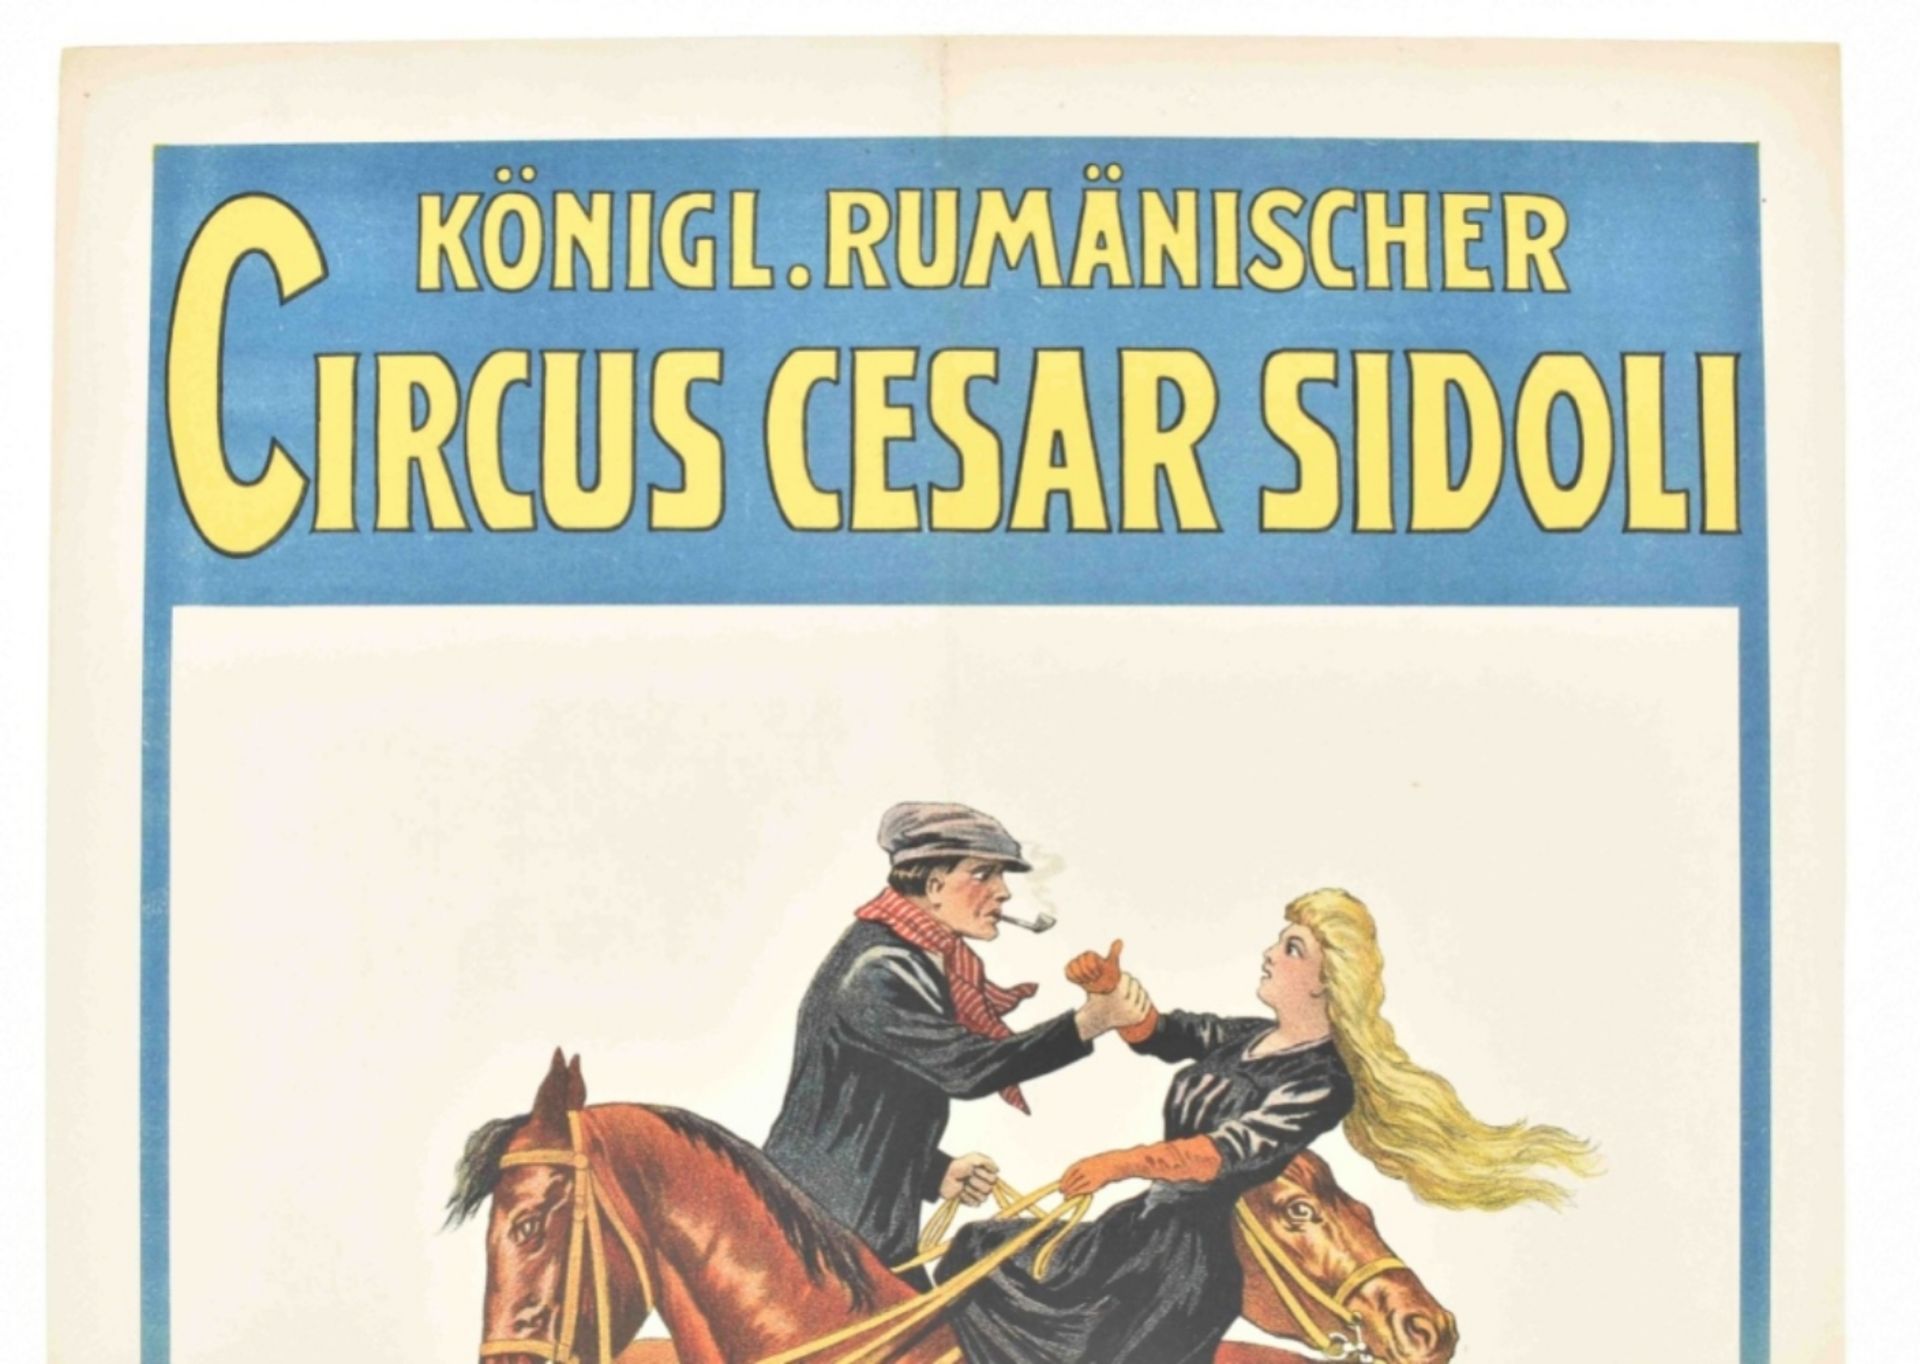 [Animal Dressage/Horses] Apachenschule Königl. Rumänischer Circus Cesar Sidoli. Friedländer, 1911 - Image 3 of 4